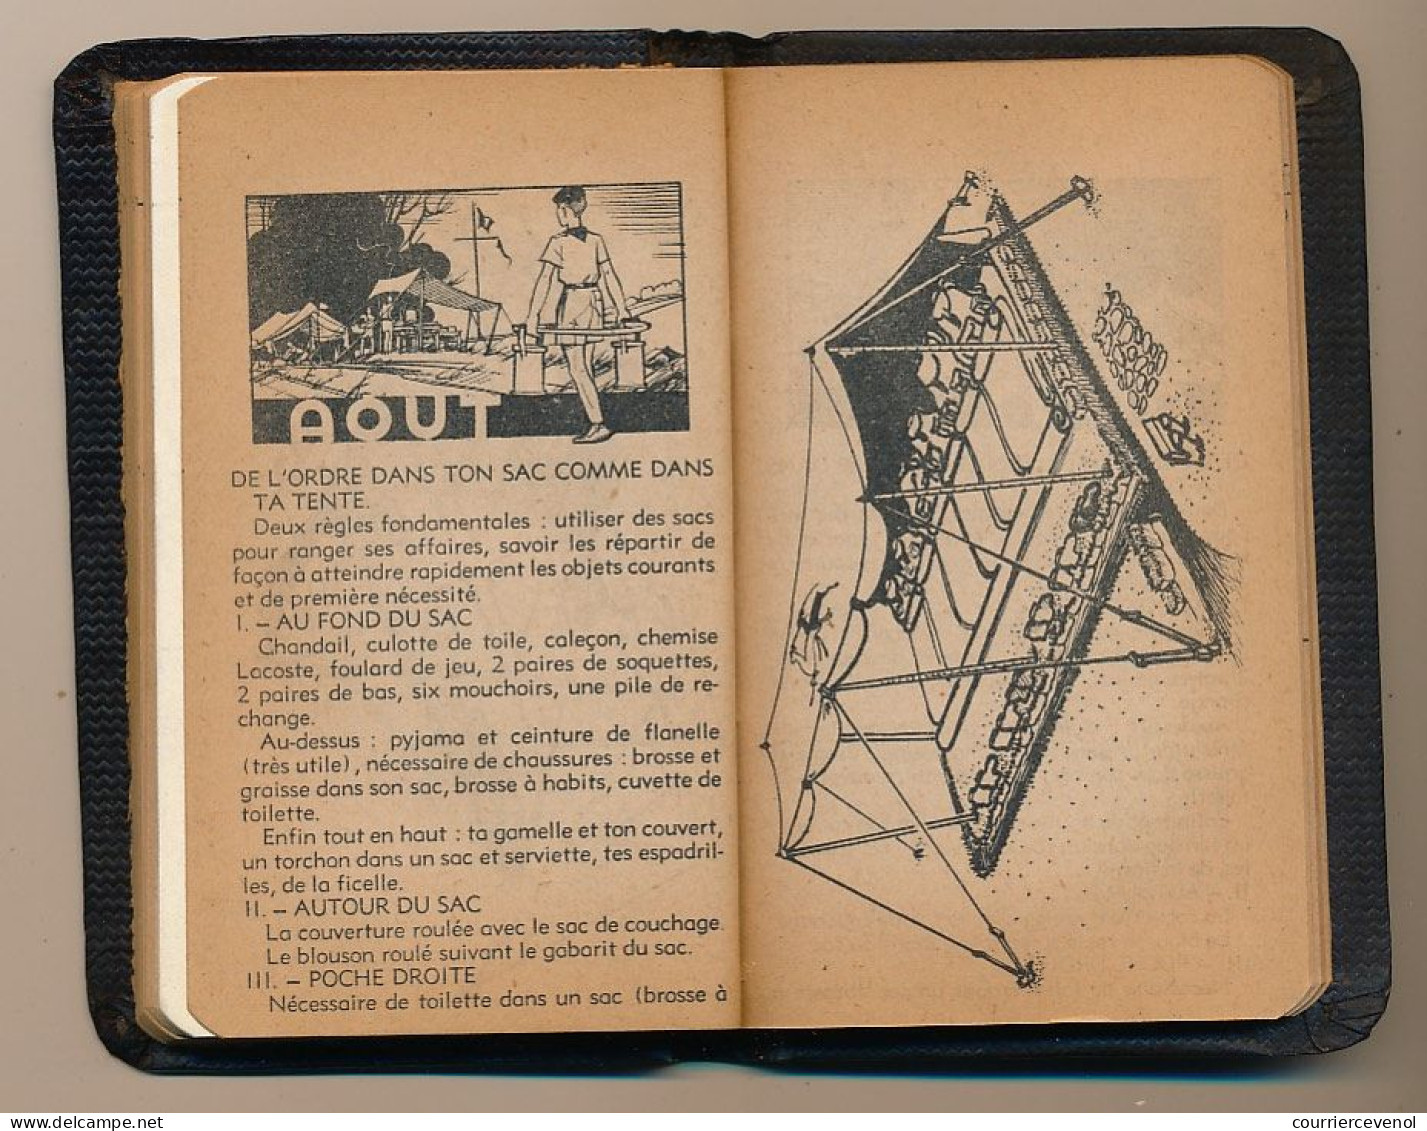 FRANCE - SCOUTISME - Petit Agenda "KIM 1945" - 7,5cm X 11,5cm - Année 1945, pour Scouts et Guides de France